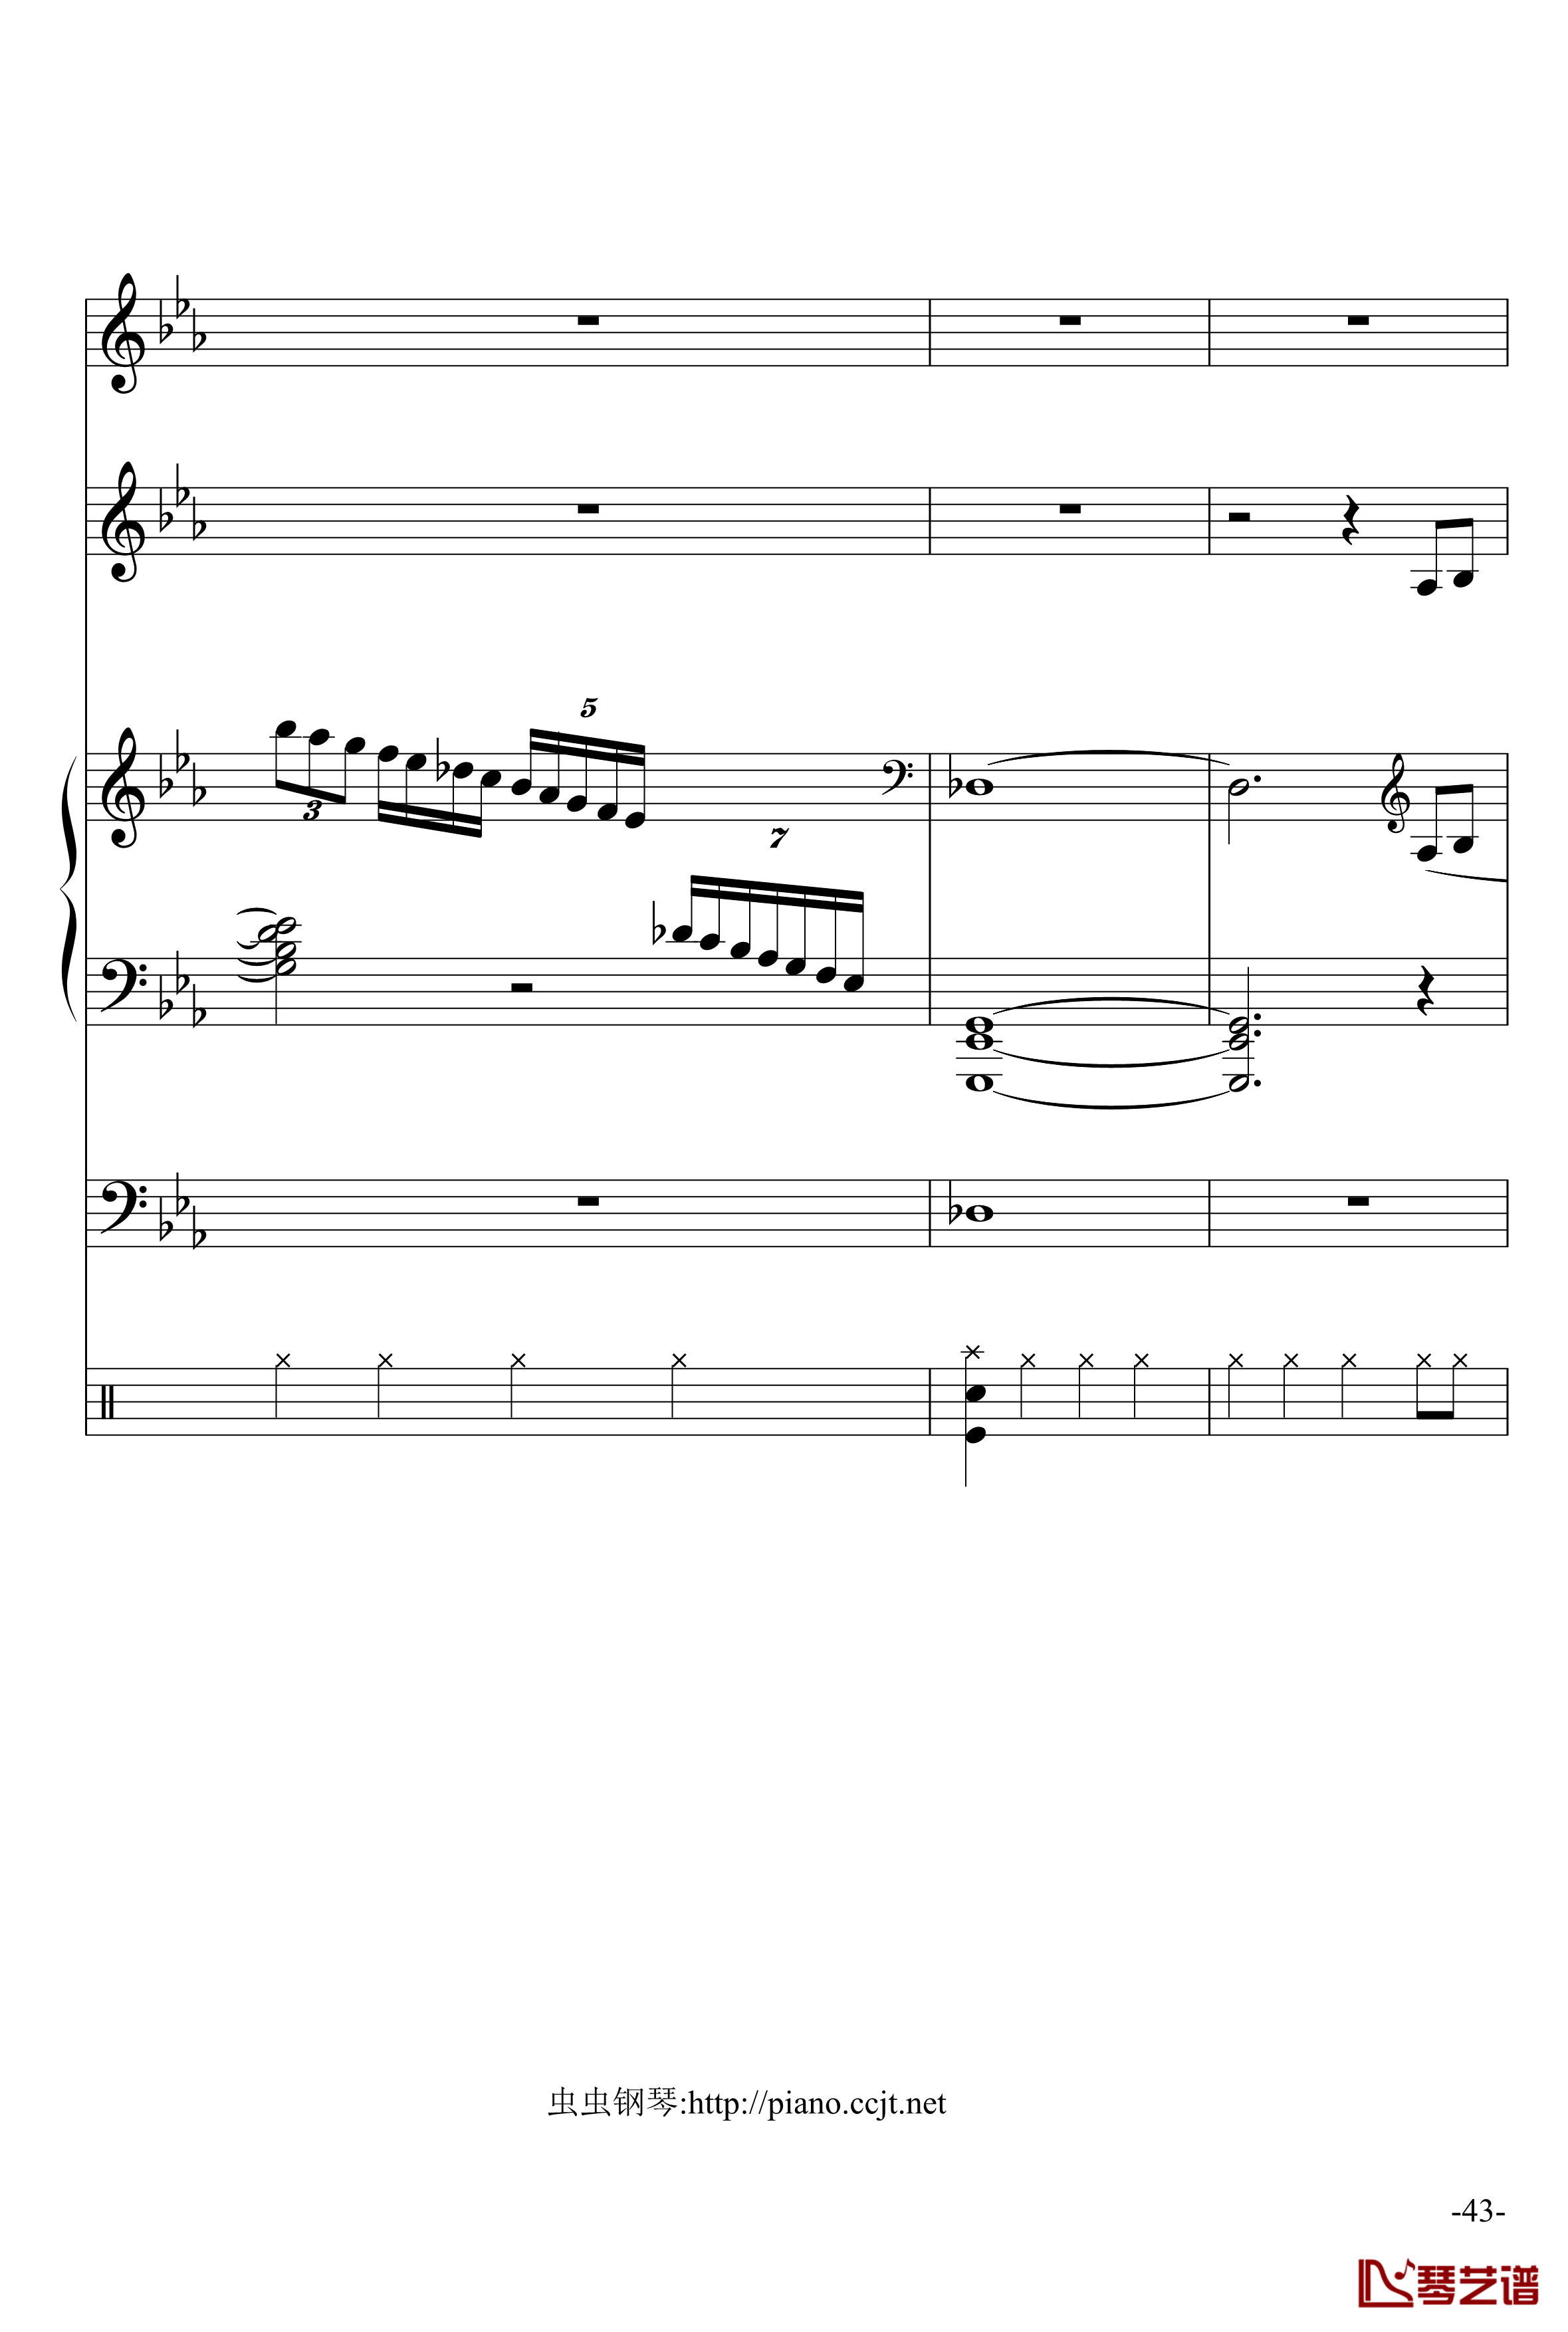 悲怆奏鸣曲钢琴谱-加小乐队-贝多芬-beethoven43